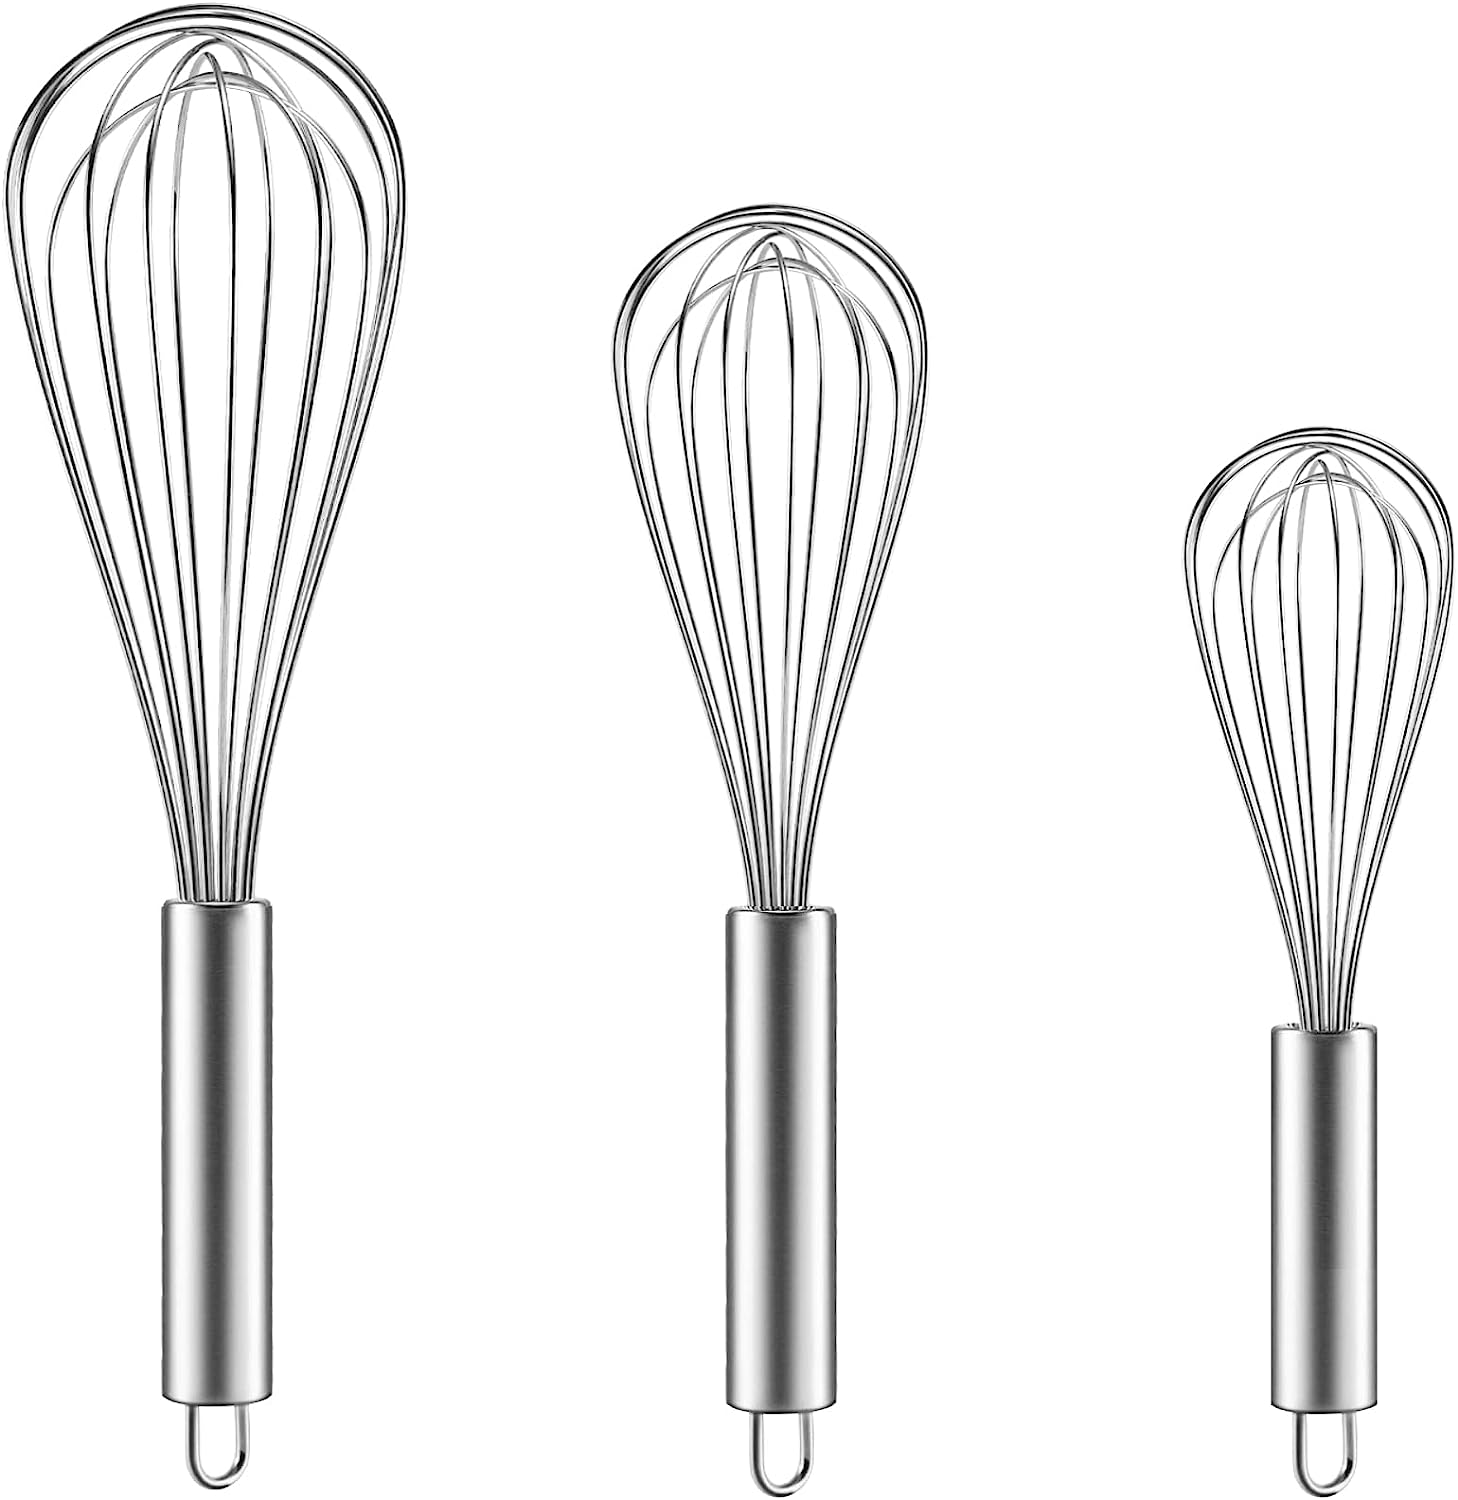  Martha Stewart Richburn 1pc 12 Stainless Steel Balloon Whisk -  Satin Finish: Home & Kitchen